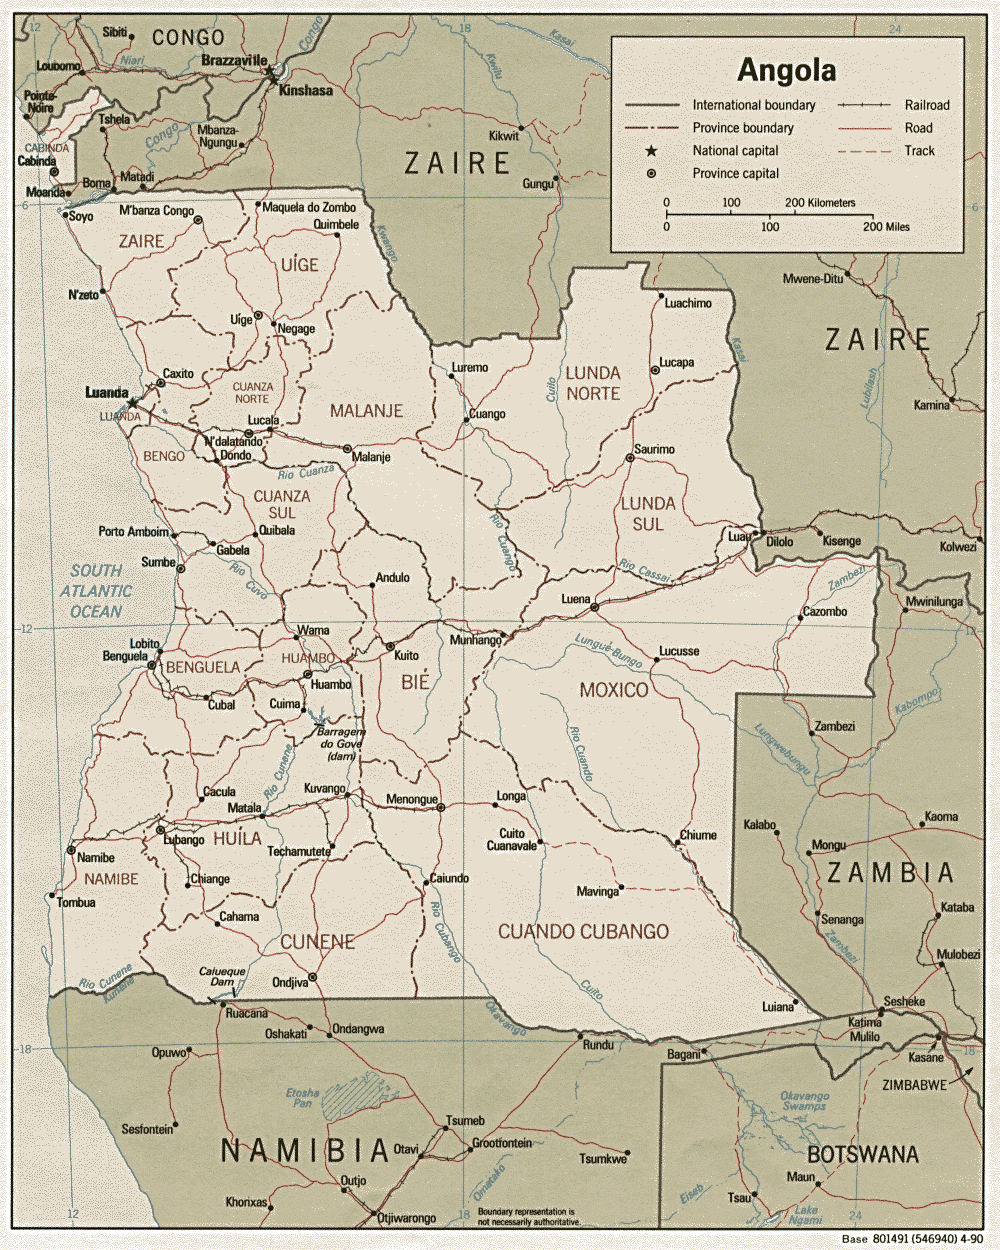 angola road map